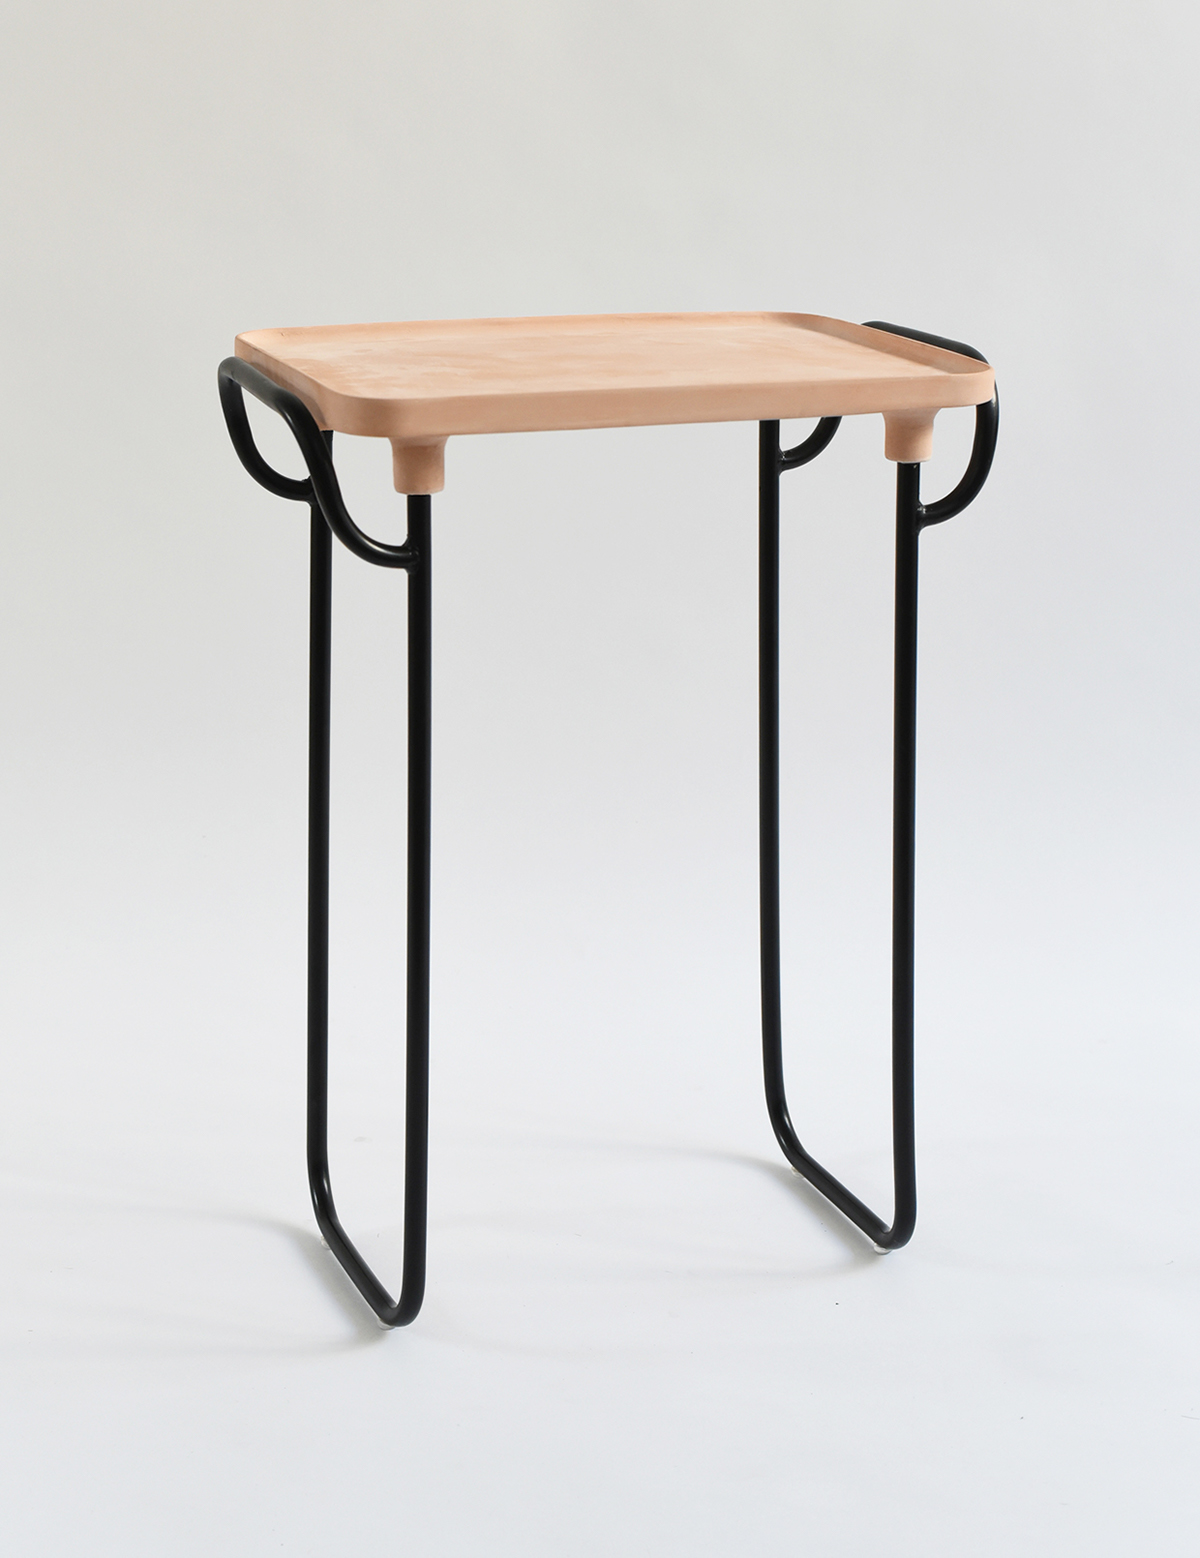 table terracota terracotta ceramic tray mexico small mesa ceramica servicio service metal minimal furniture mueble